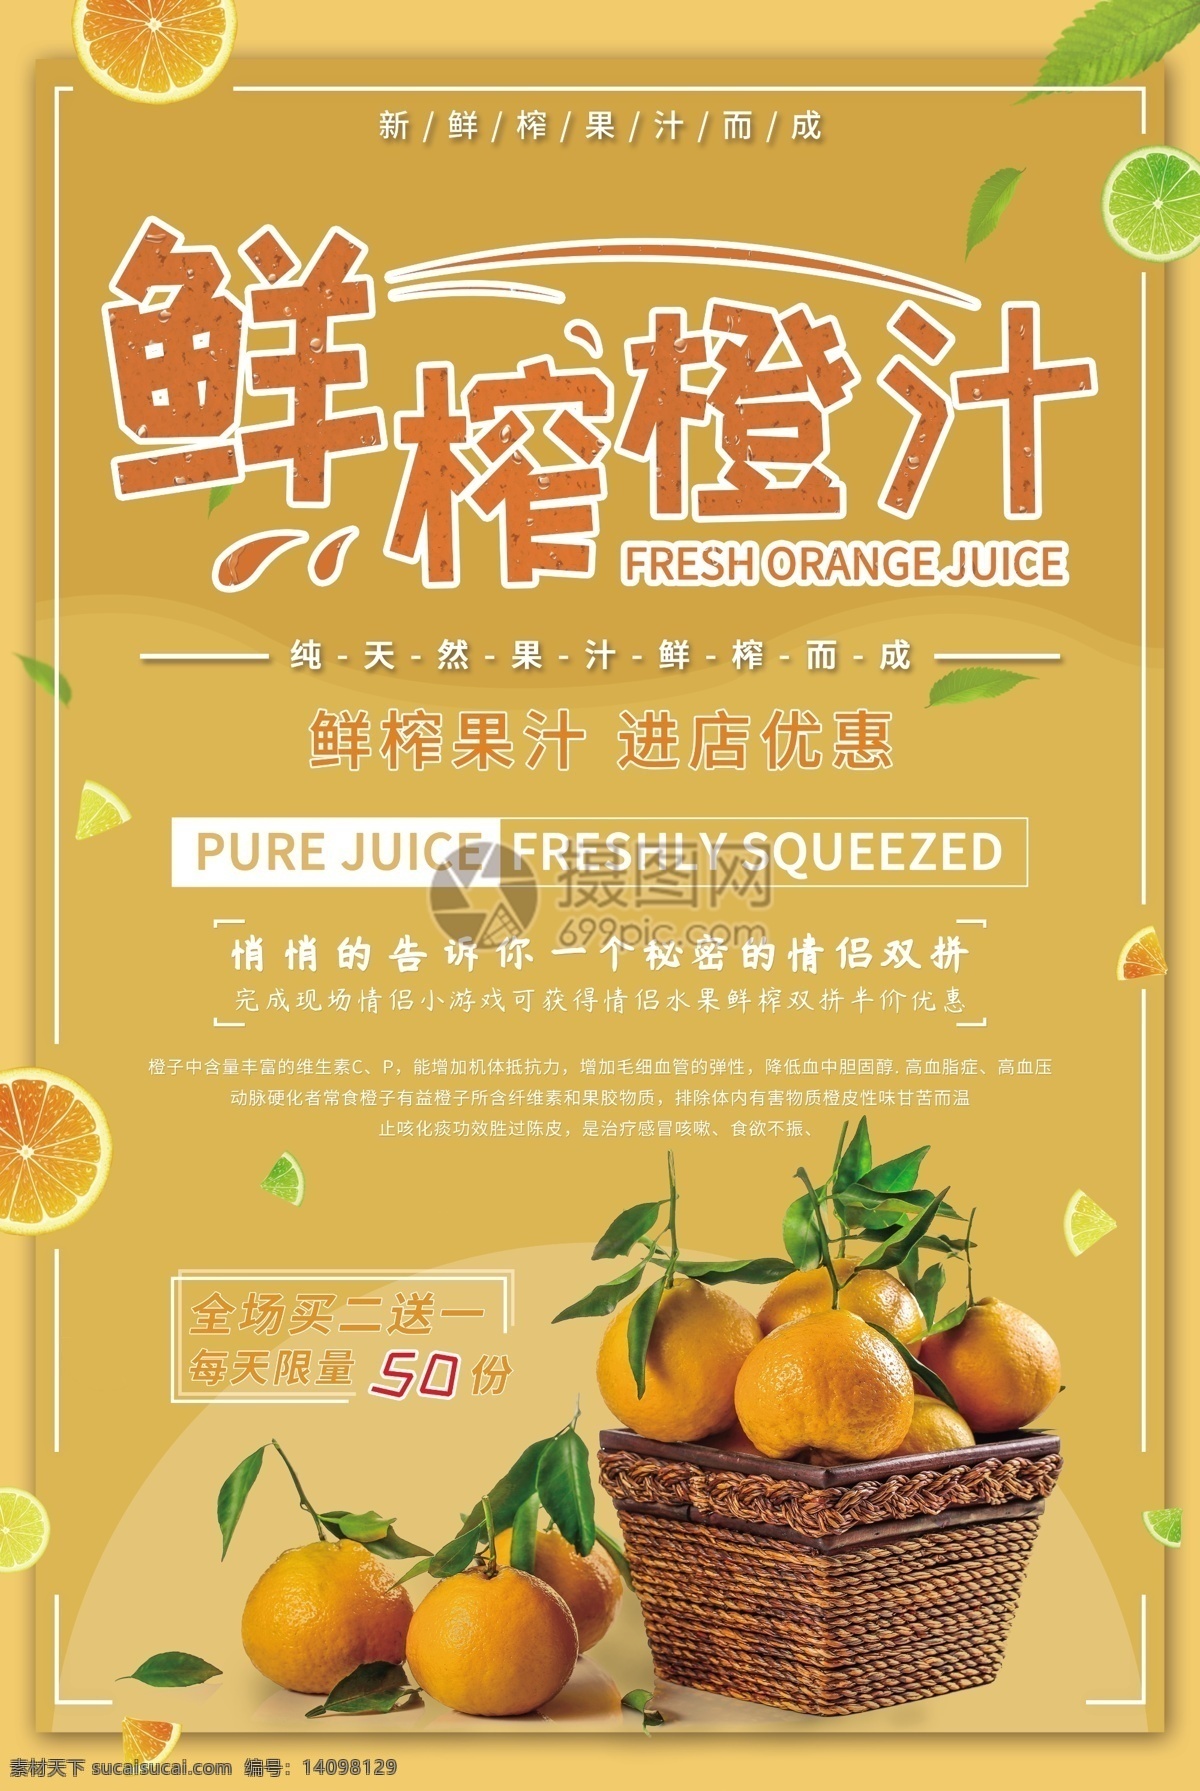 鲜榨 橙汁 促销 海报 黄色 新鲜水果 水果促销 果子 水果店促销 促销海报 鲜果促销